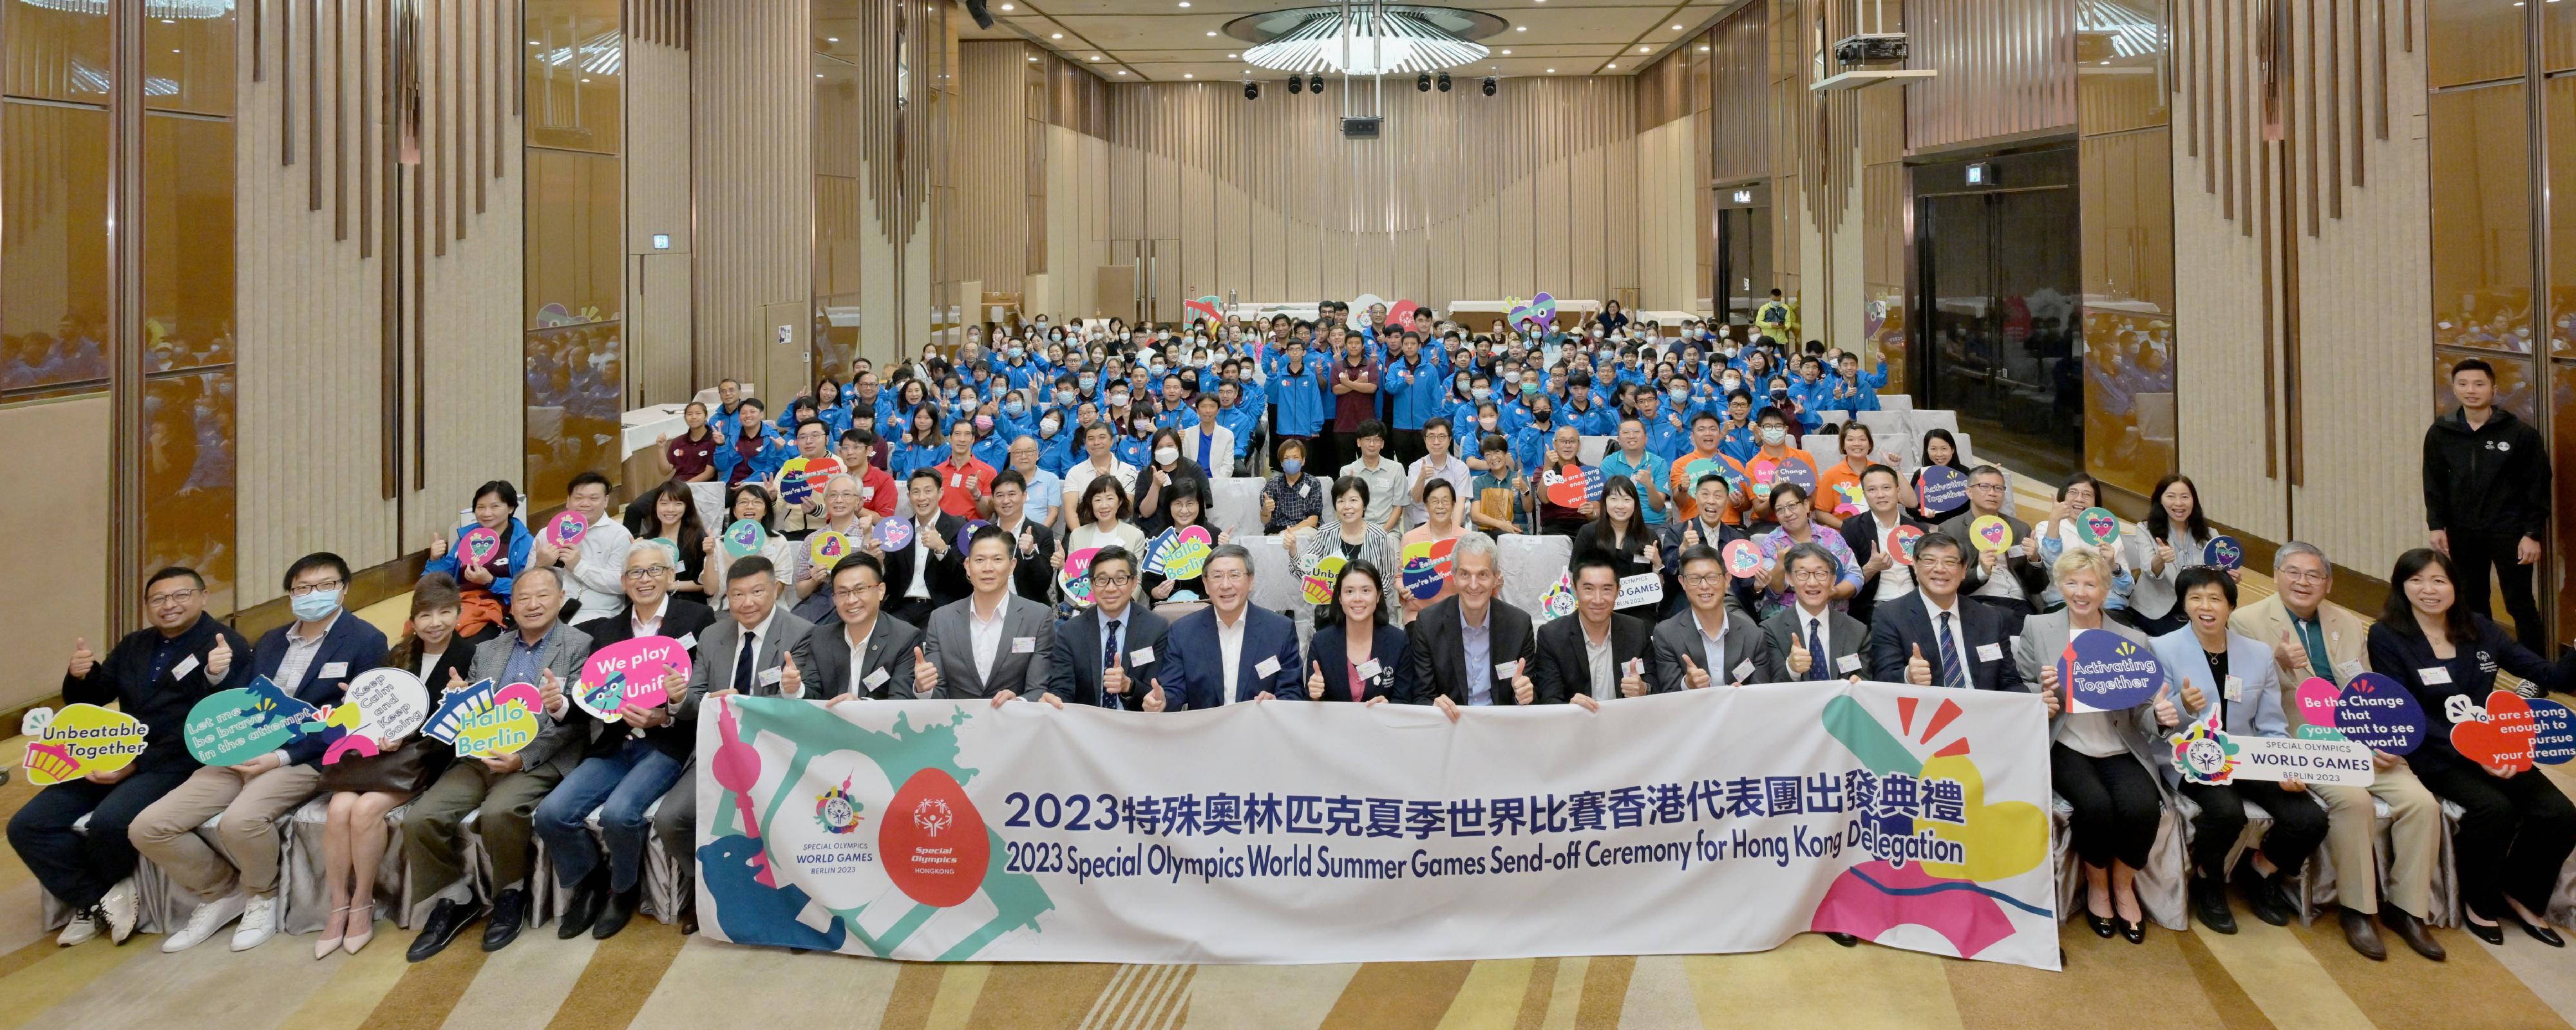 政務司副司長卓永興（前排左十）今日（五月二十五日）出席2023特殊奧林匹克夏季世界比賽香港代表團出發典禮，與嘉賓和運動員代表大合照。